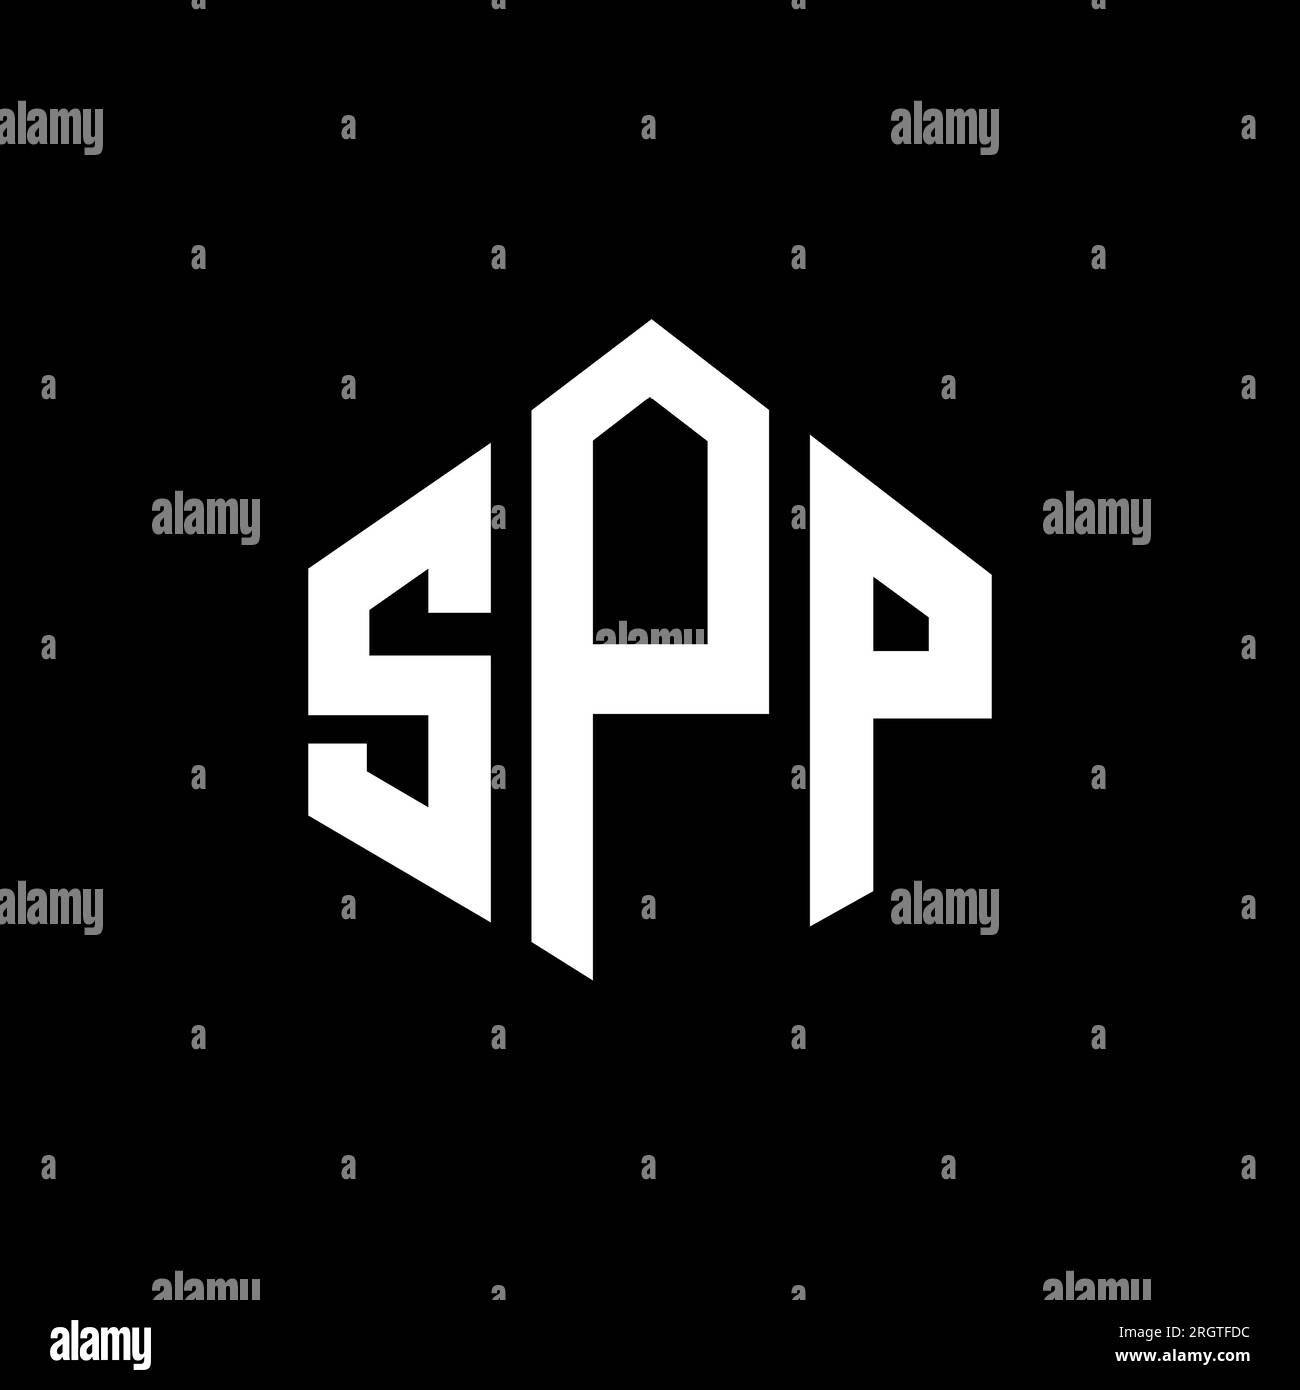 Logo mit SPP-Buchstaben und Polygonform. Spp-Polygon- und würfelförmiges Logo. SPP sechseckige Vektor-Logo-Vorlage in Weiß und Schwarz. SPP Monogr Stock Vektor